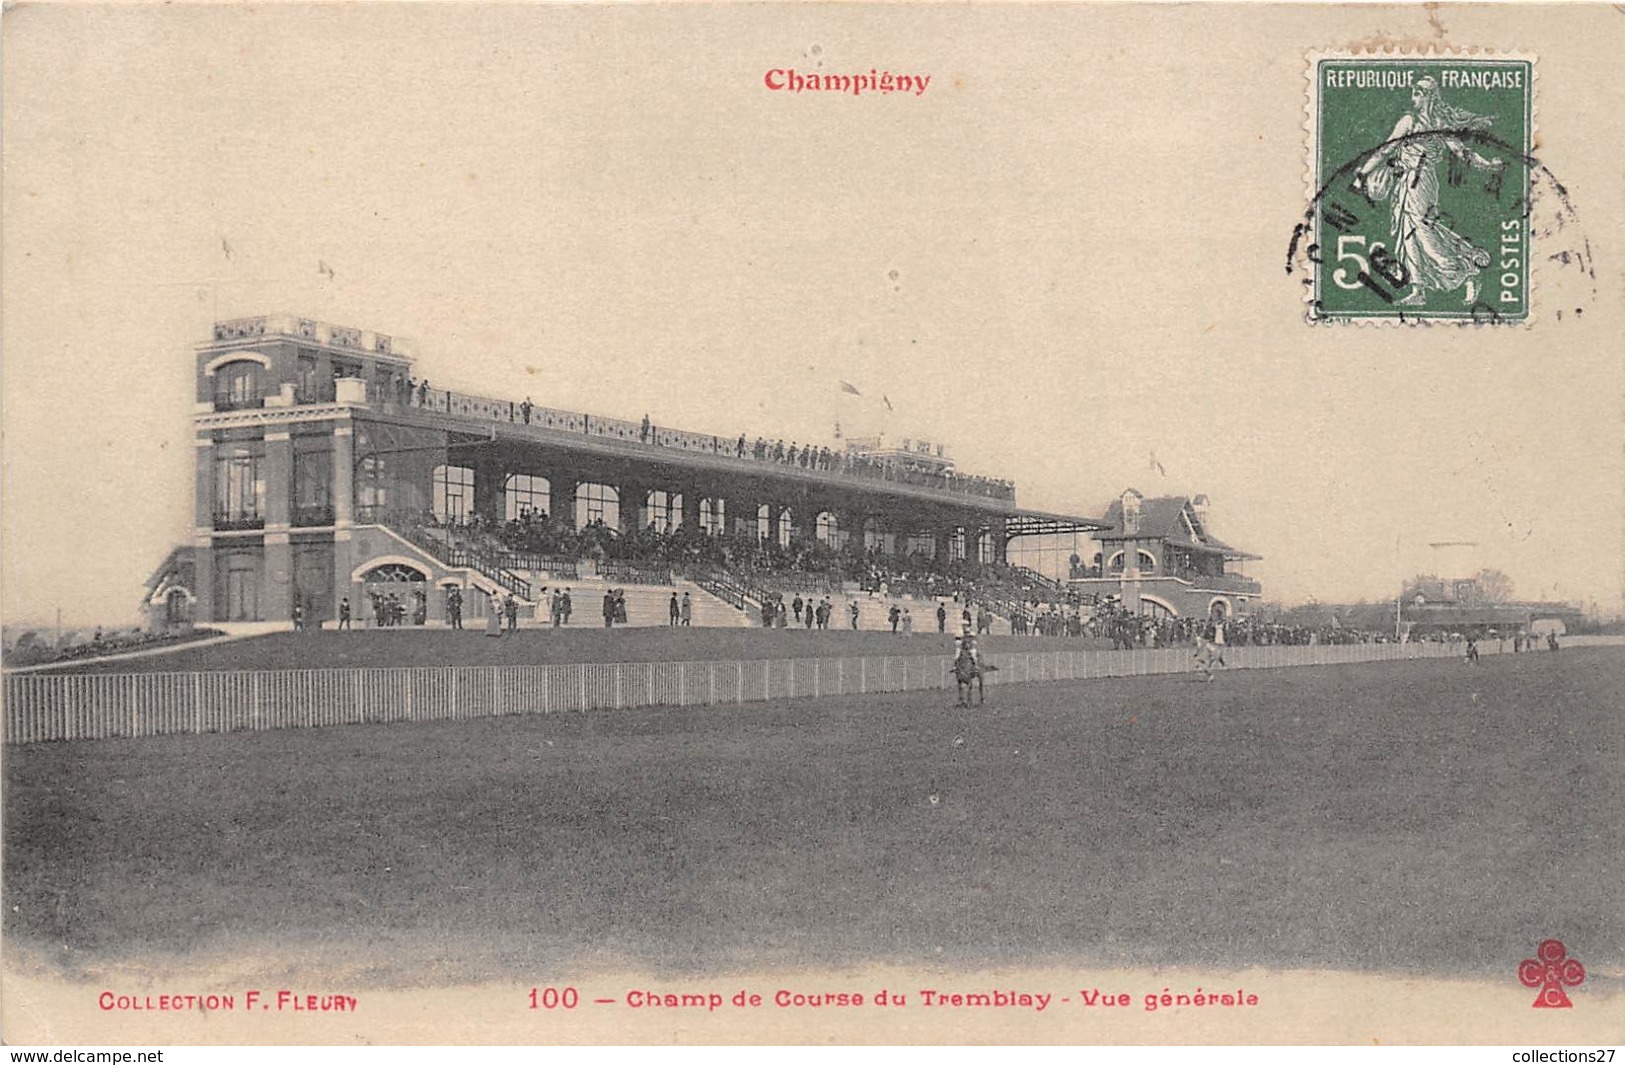 94-CHAMPIGNY- CHAMP DE COURSE DU TREMBLAY , VUE GENERALE - Champigny Sur Marne